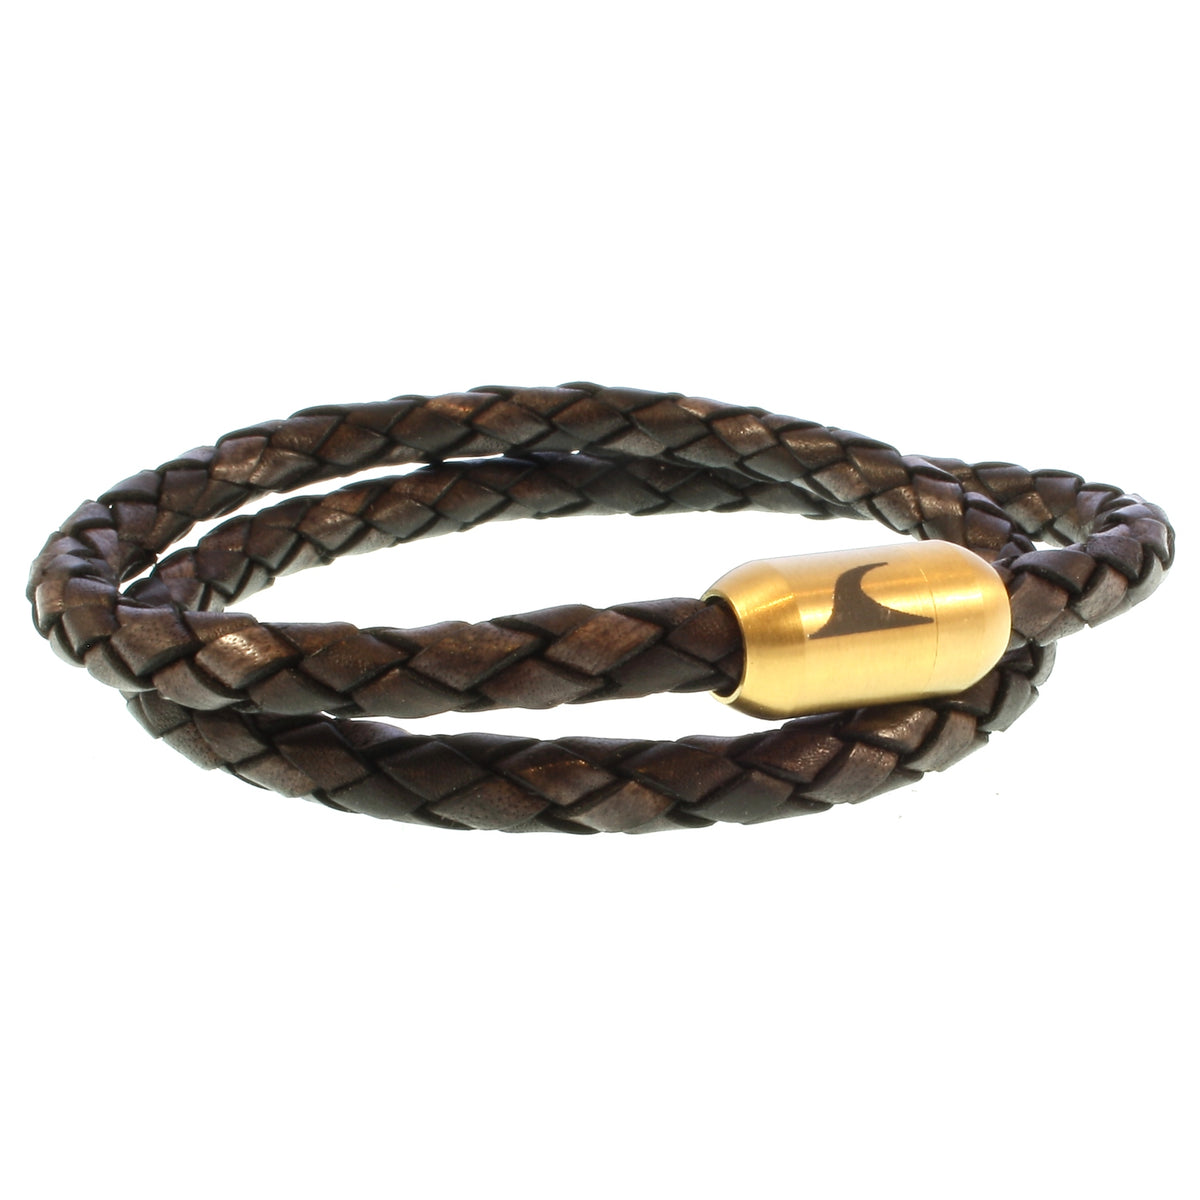 Herren-Leder-Armband-hawaii-braun-gold-geflochten-Edelstahlverschluss-vorn-wavepirate-shop-f